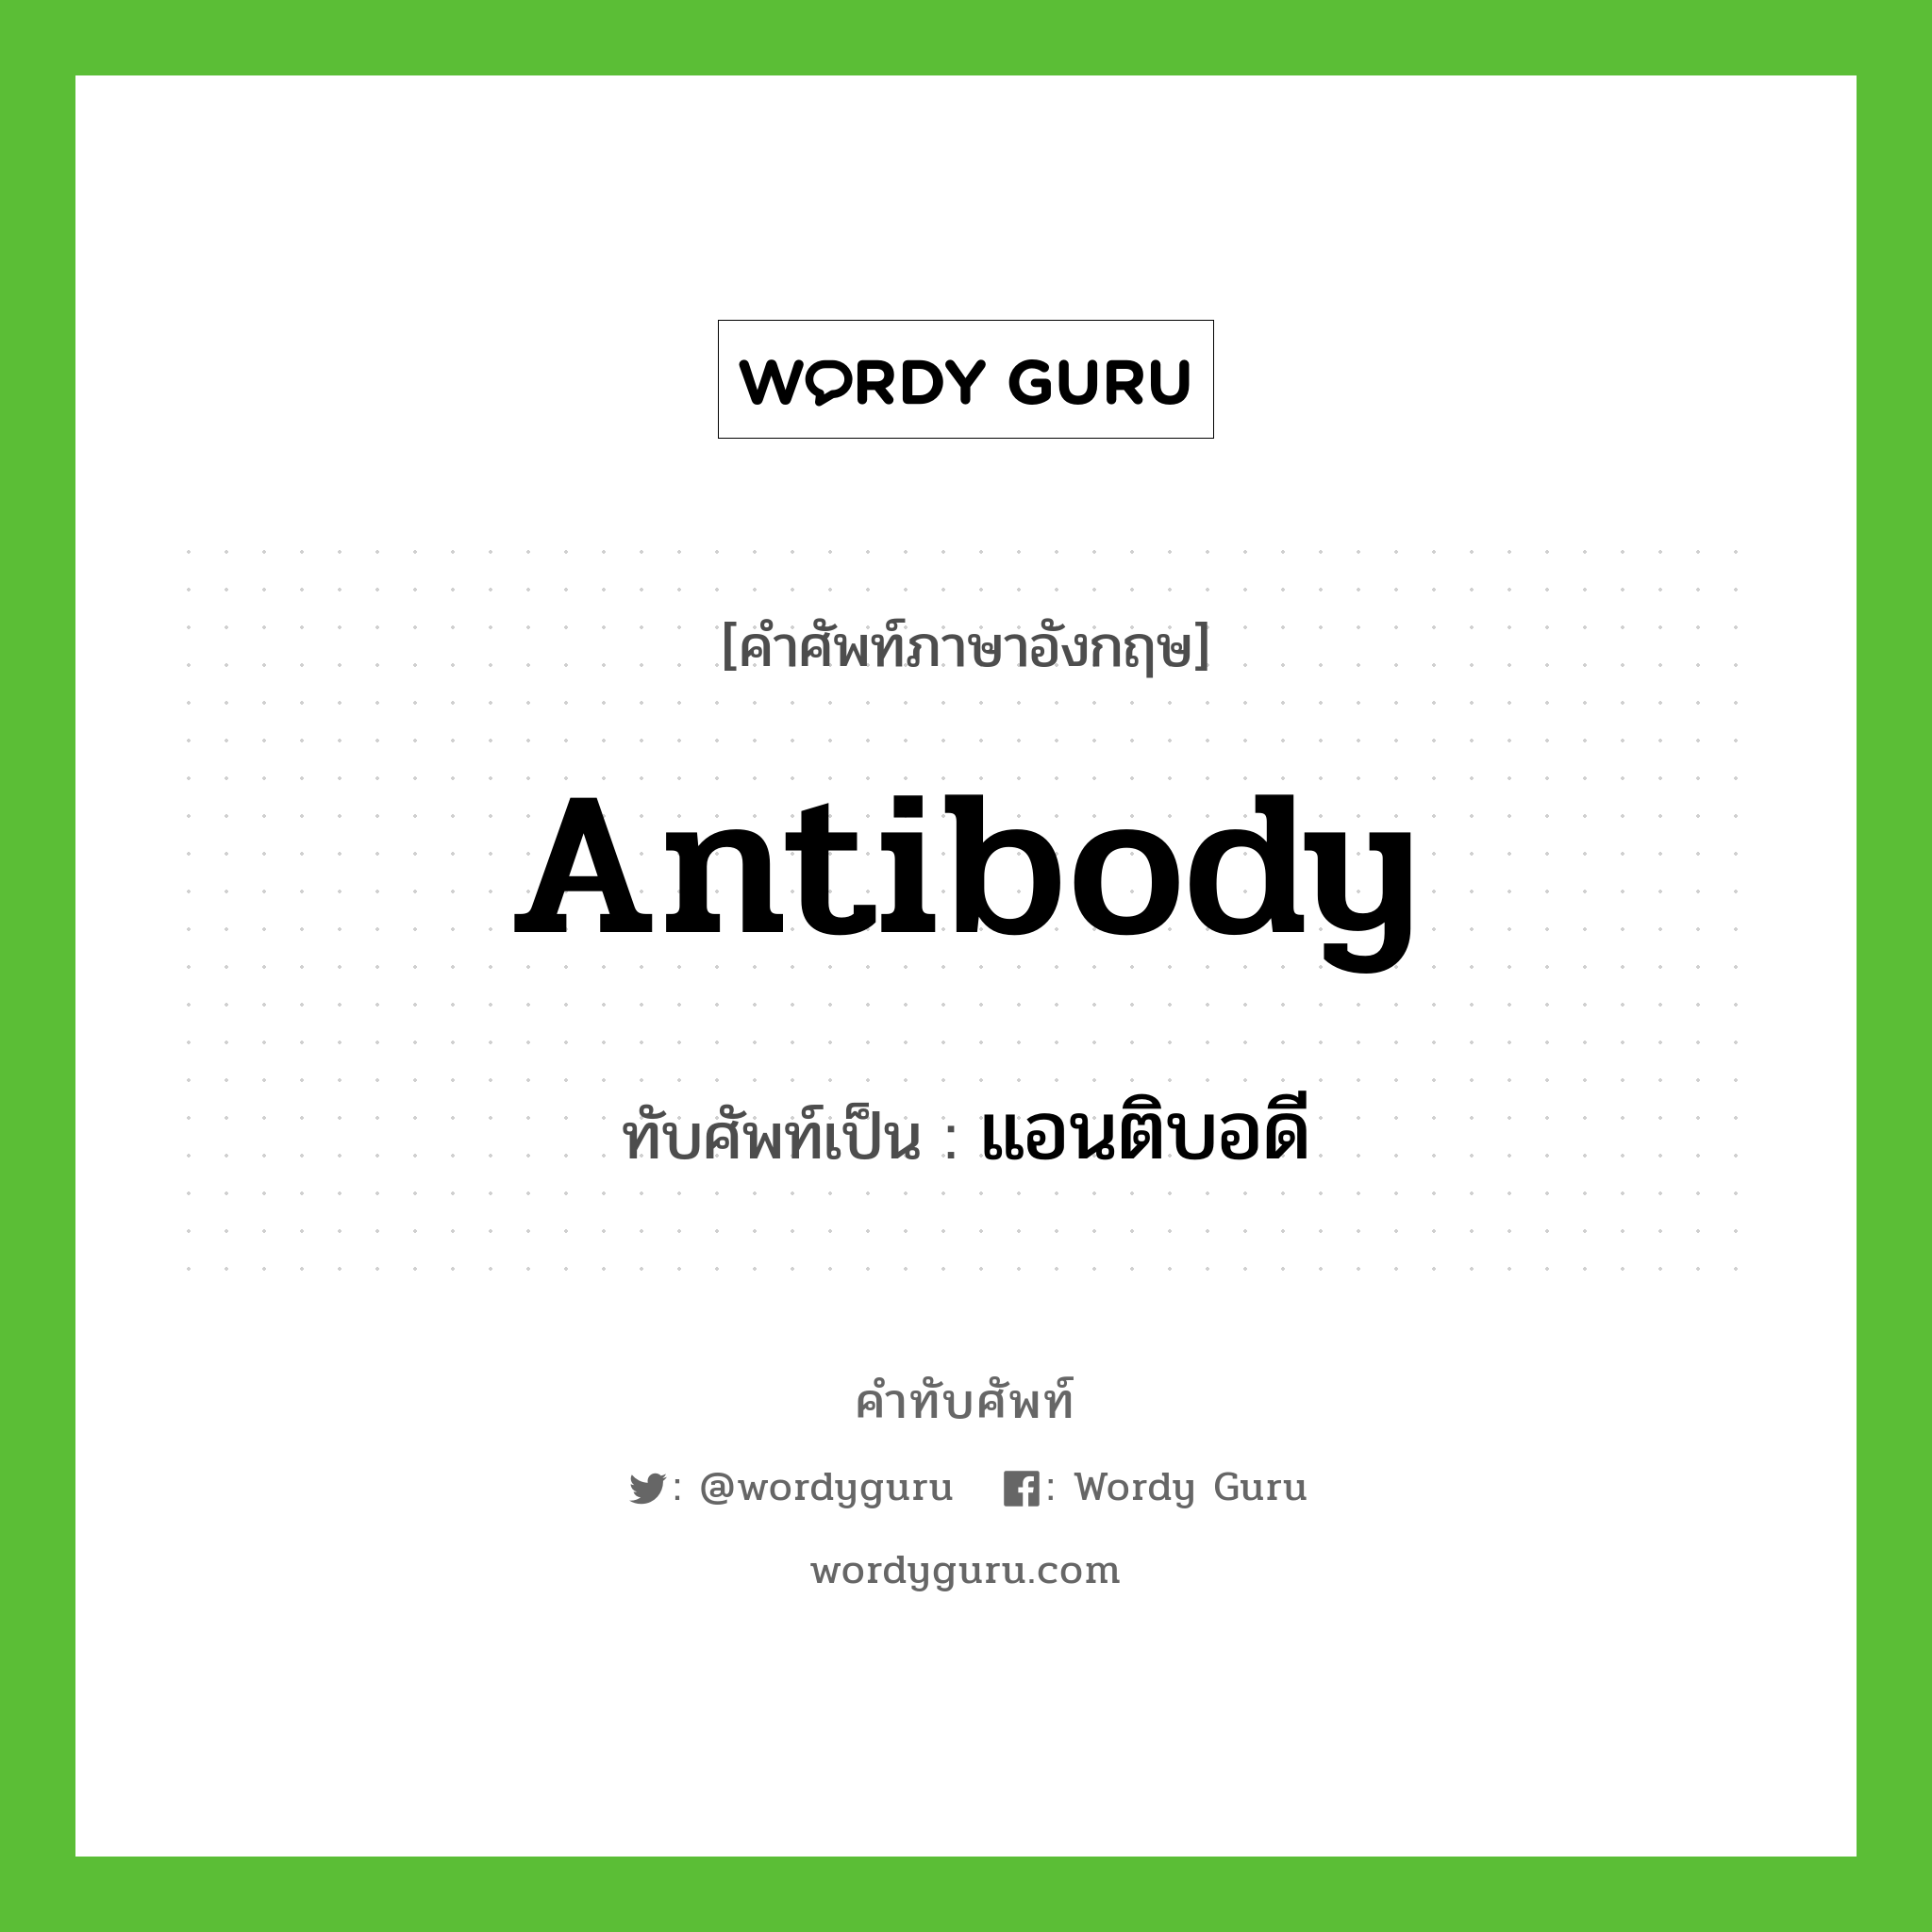 antibody เขียนเป็นคำไทยว่าอะไร?, คำศัพท์ภาษาอังกฤษ antibody ทับศัพท์เป็น แอนติบอดี